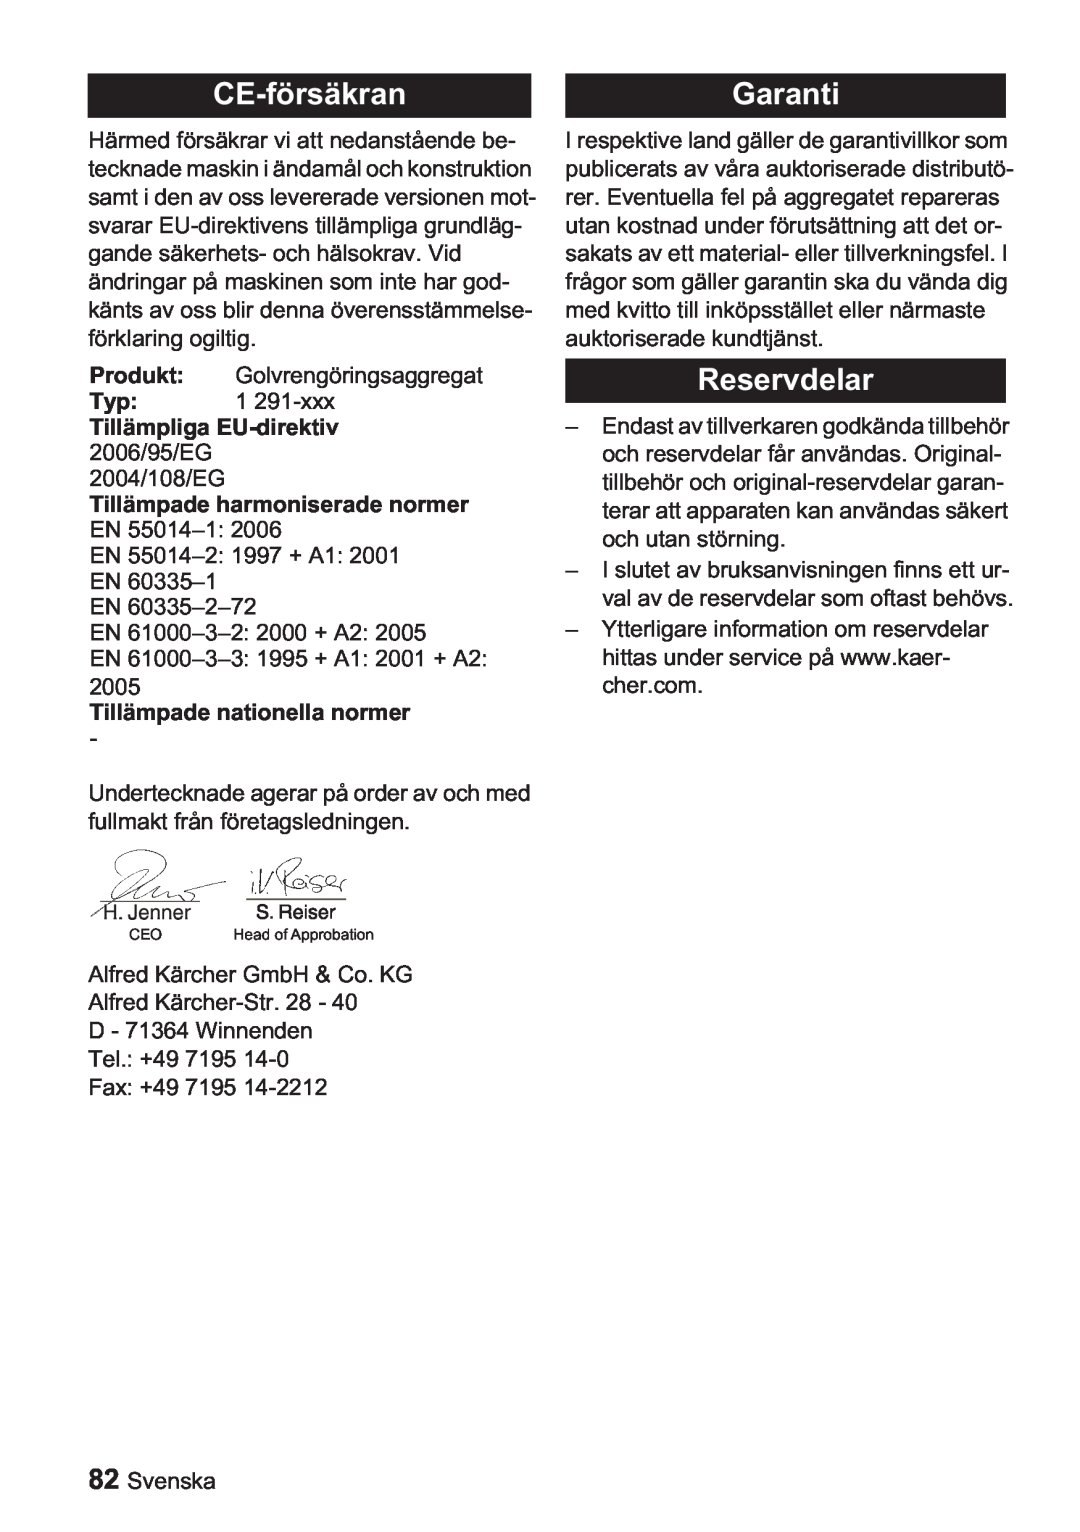 Karcher BDP 1500, BDP 50 manual CE-försäkranGaranti, Reservdelar, Tillämpliga EU-direktiv 2006/95/EG 2004/108/EG 